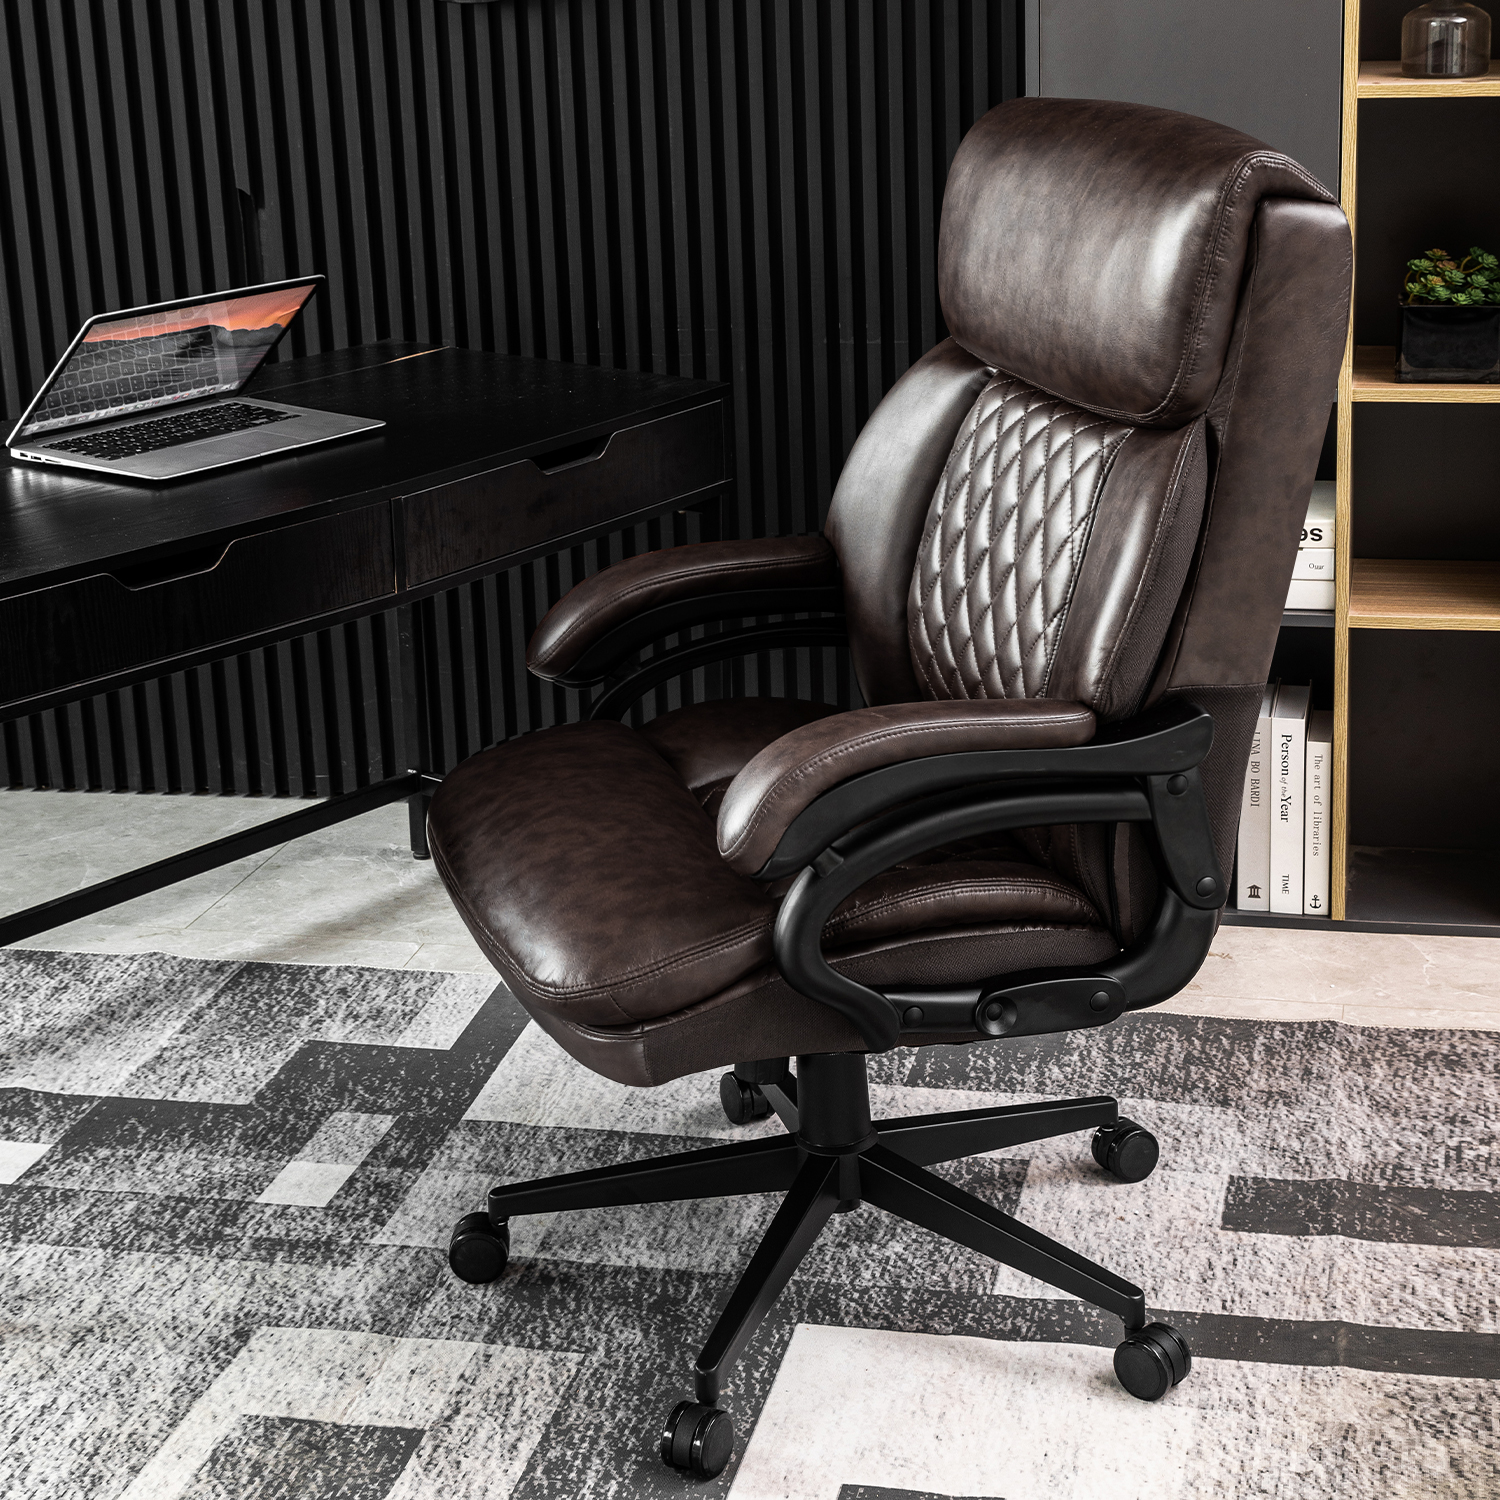 Cadira d'oficina executiva amb respatller alt marró